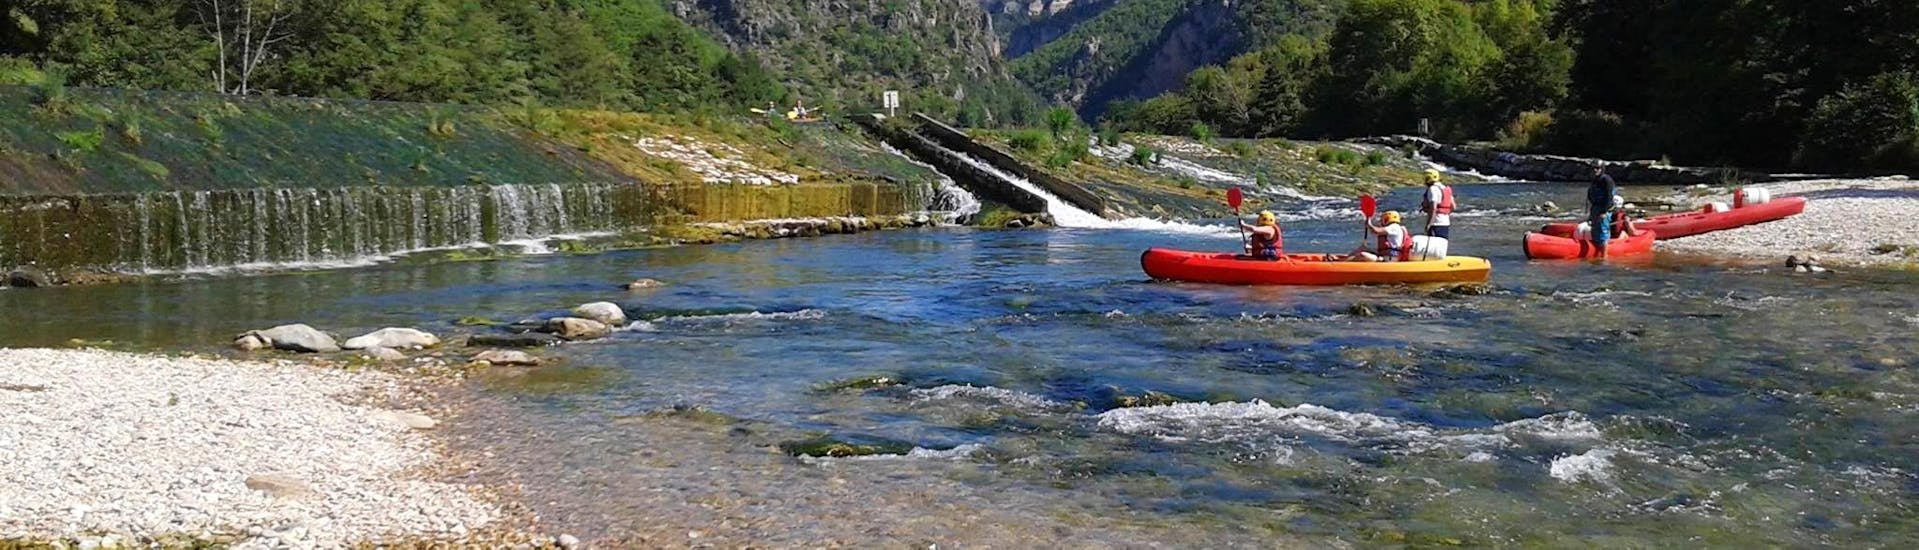 Een groep vrienden vermaakt zich op het water tijdens hun Kanohuur op de rivier de Tarn - Ontdekkingstocht 7 km met Canoë Aigue Vive Gorges du Tarn.